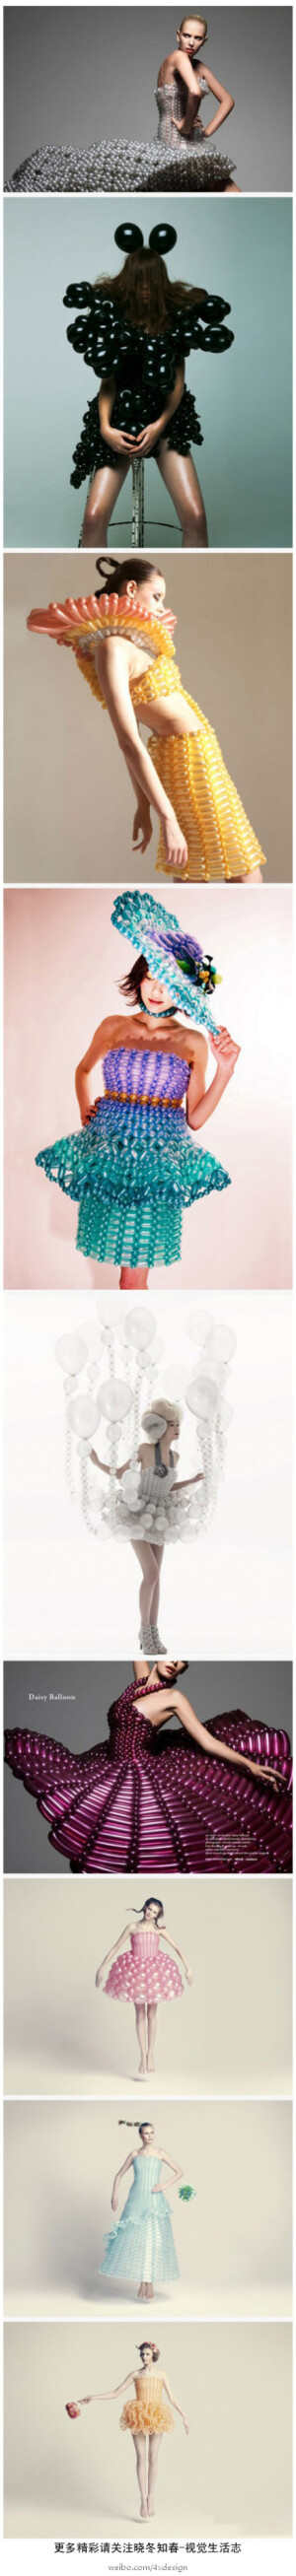 《华丽的气球服饰》杰出的的气球艺术家Rie Hosokai，也是具有创新精神的时装设计师，而她的搭档 Takashi Kawada更是位优秀的艺术指导，两人完美合作，创作出这组优秀的艺术作品。有点意思吧。 更多精彩请关注@晓冬知春-视觉生活志